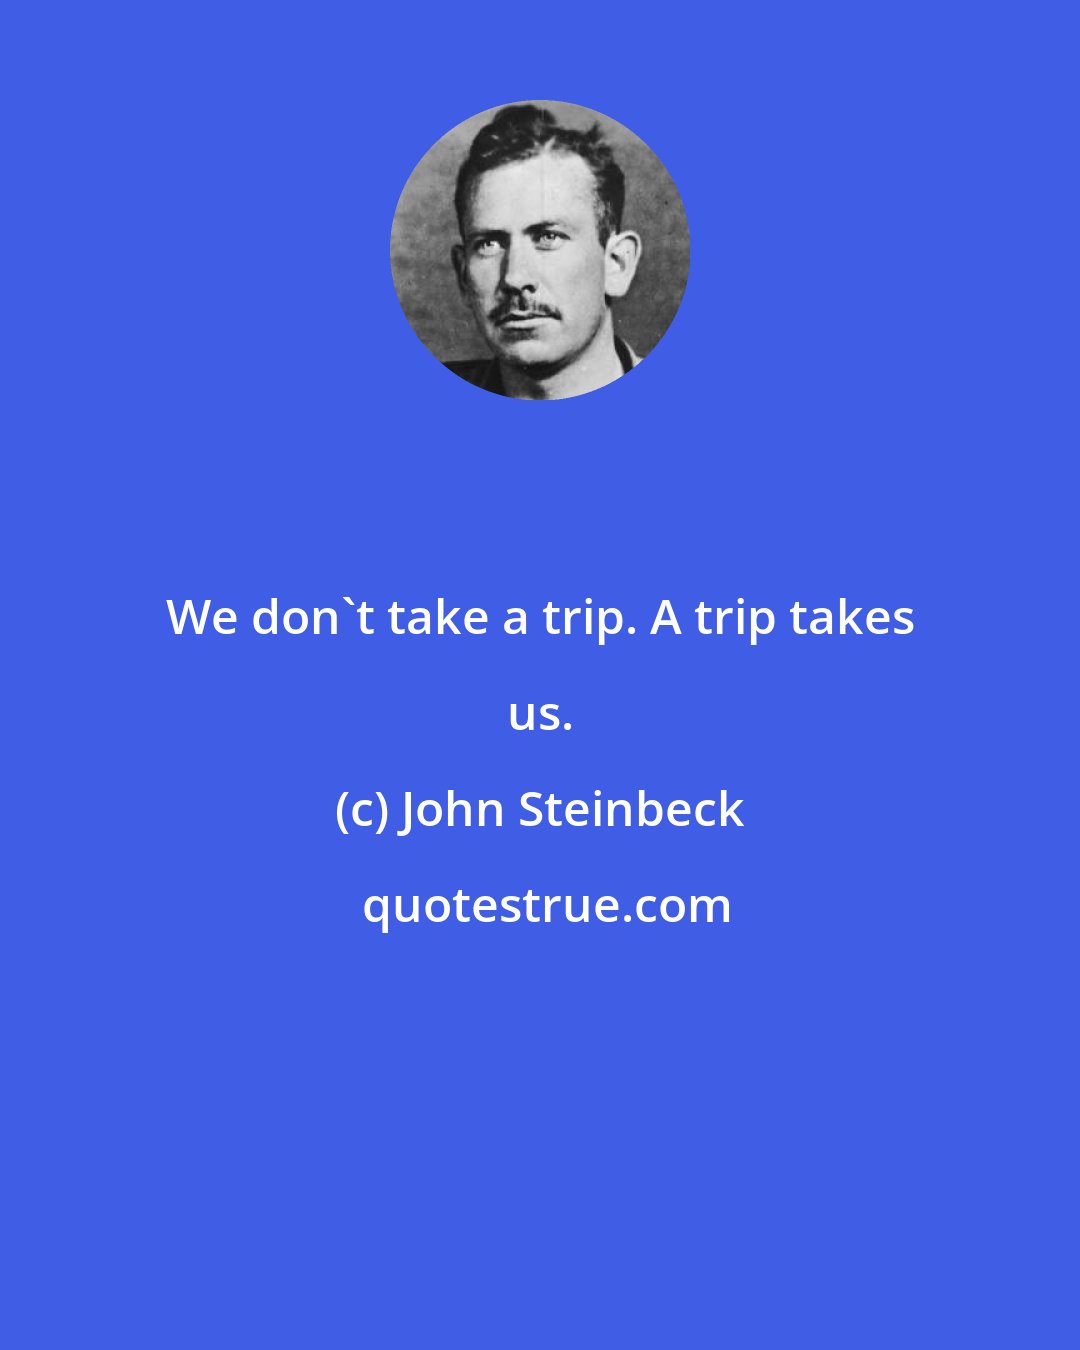 John Steinbeck: We don't take a trip. A trip takes us.